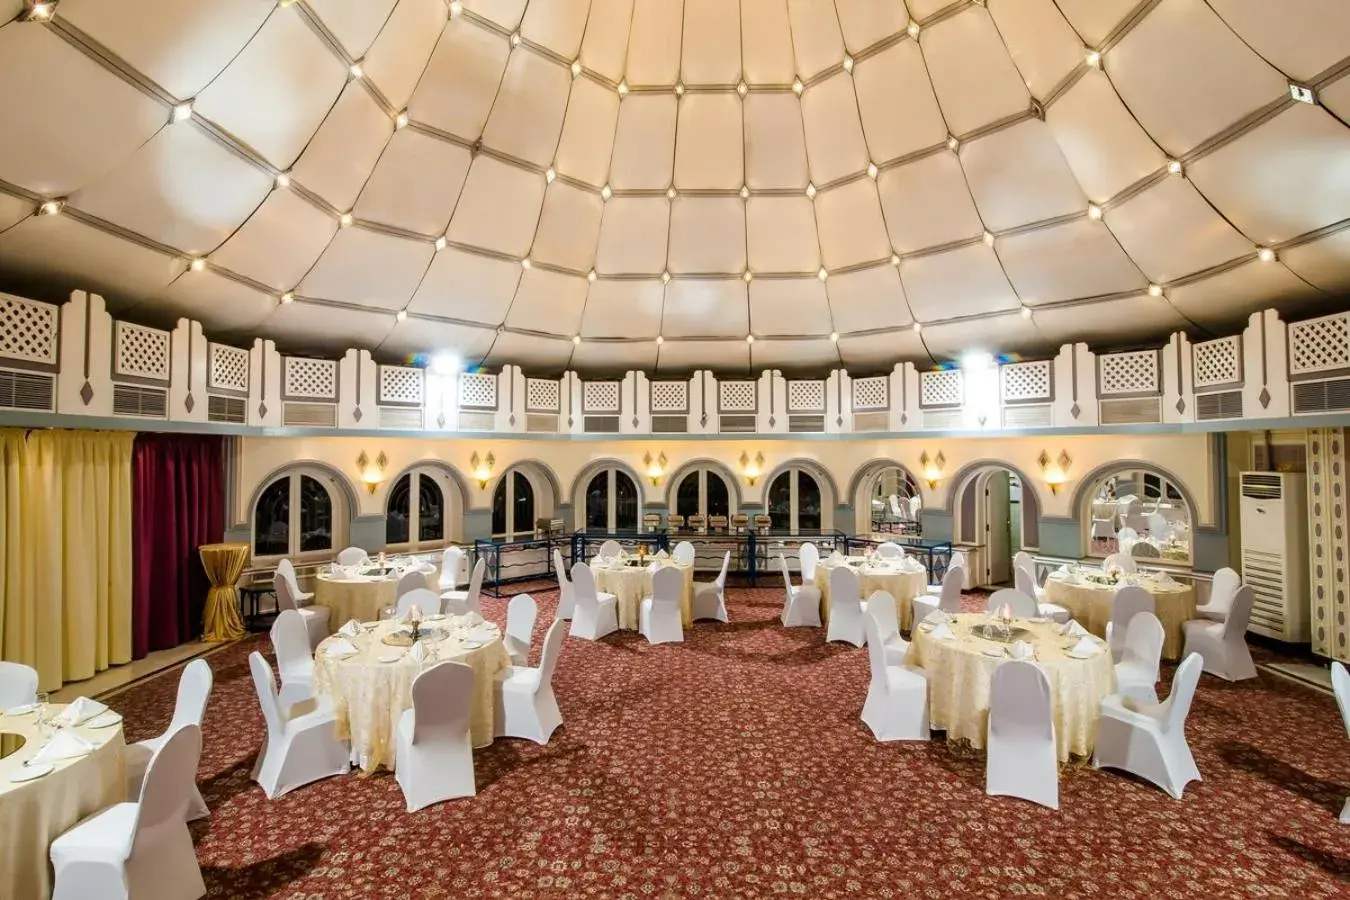 Banquet/Function facilities, Banquet Facilities in Marbella Resort